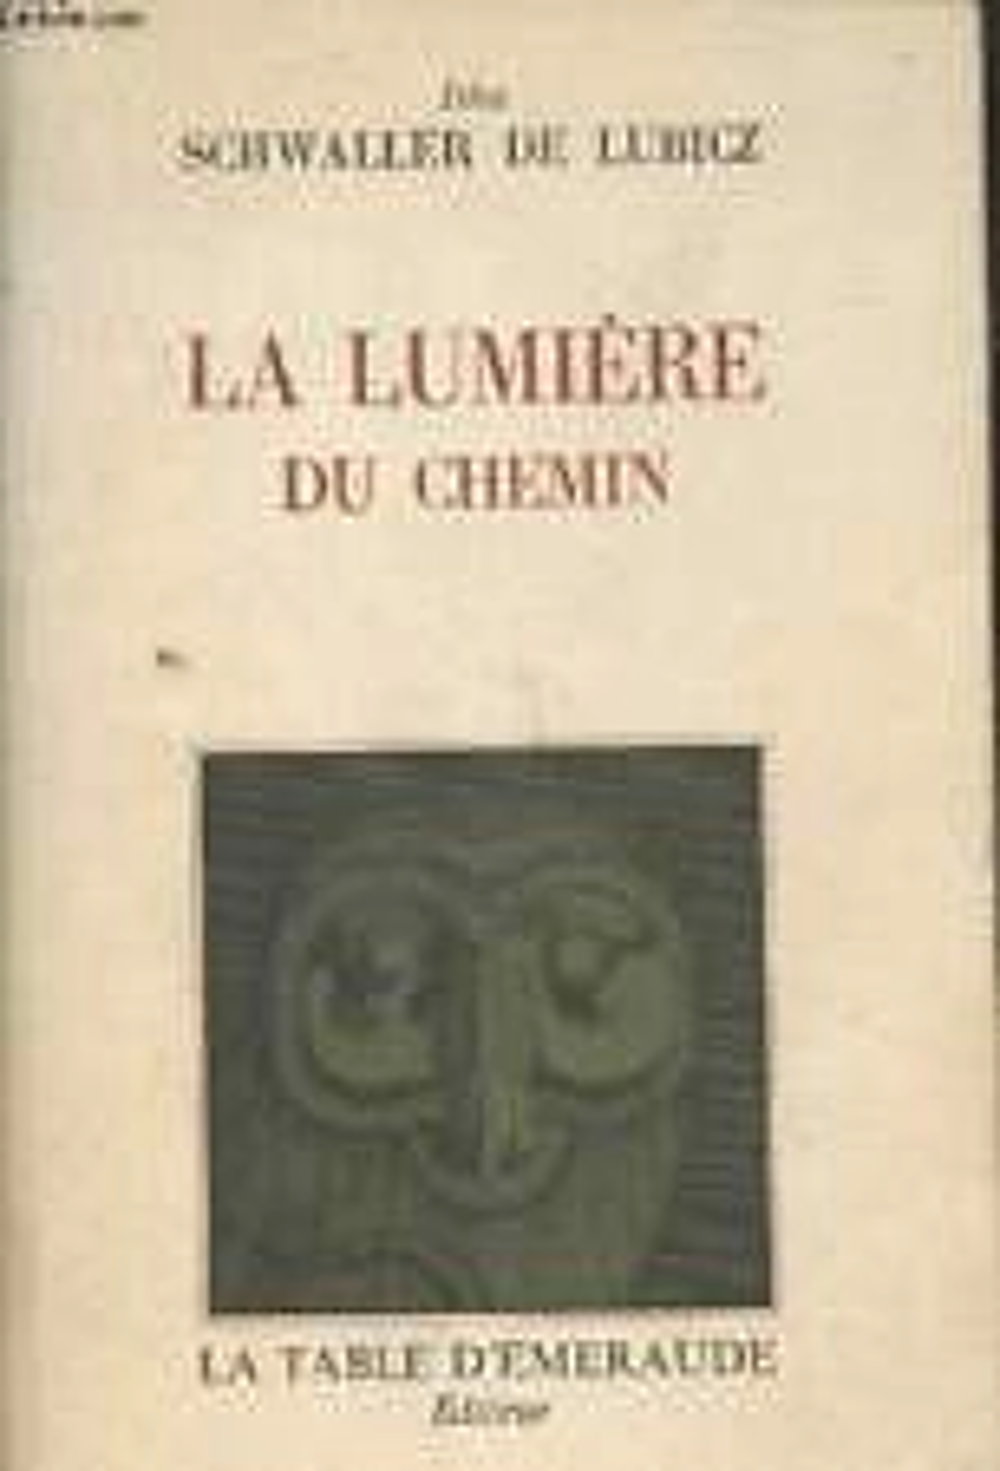 La Lumi&egrave;re du chemin Par Isha Schwaller de Lubicz .. BE 
Livres et BD